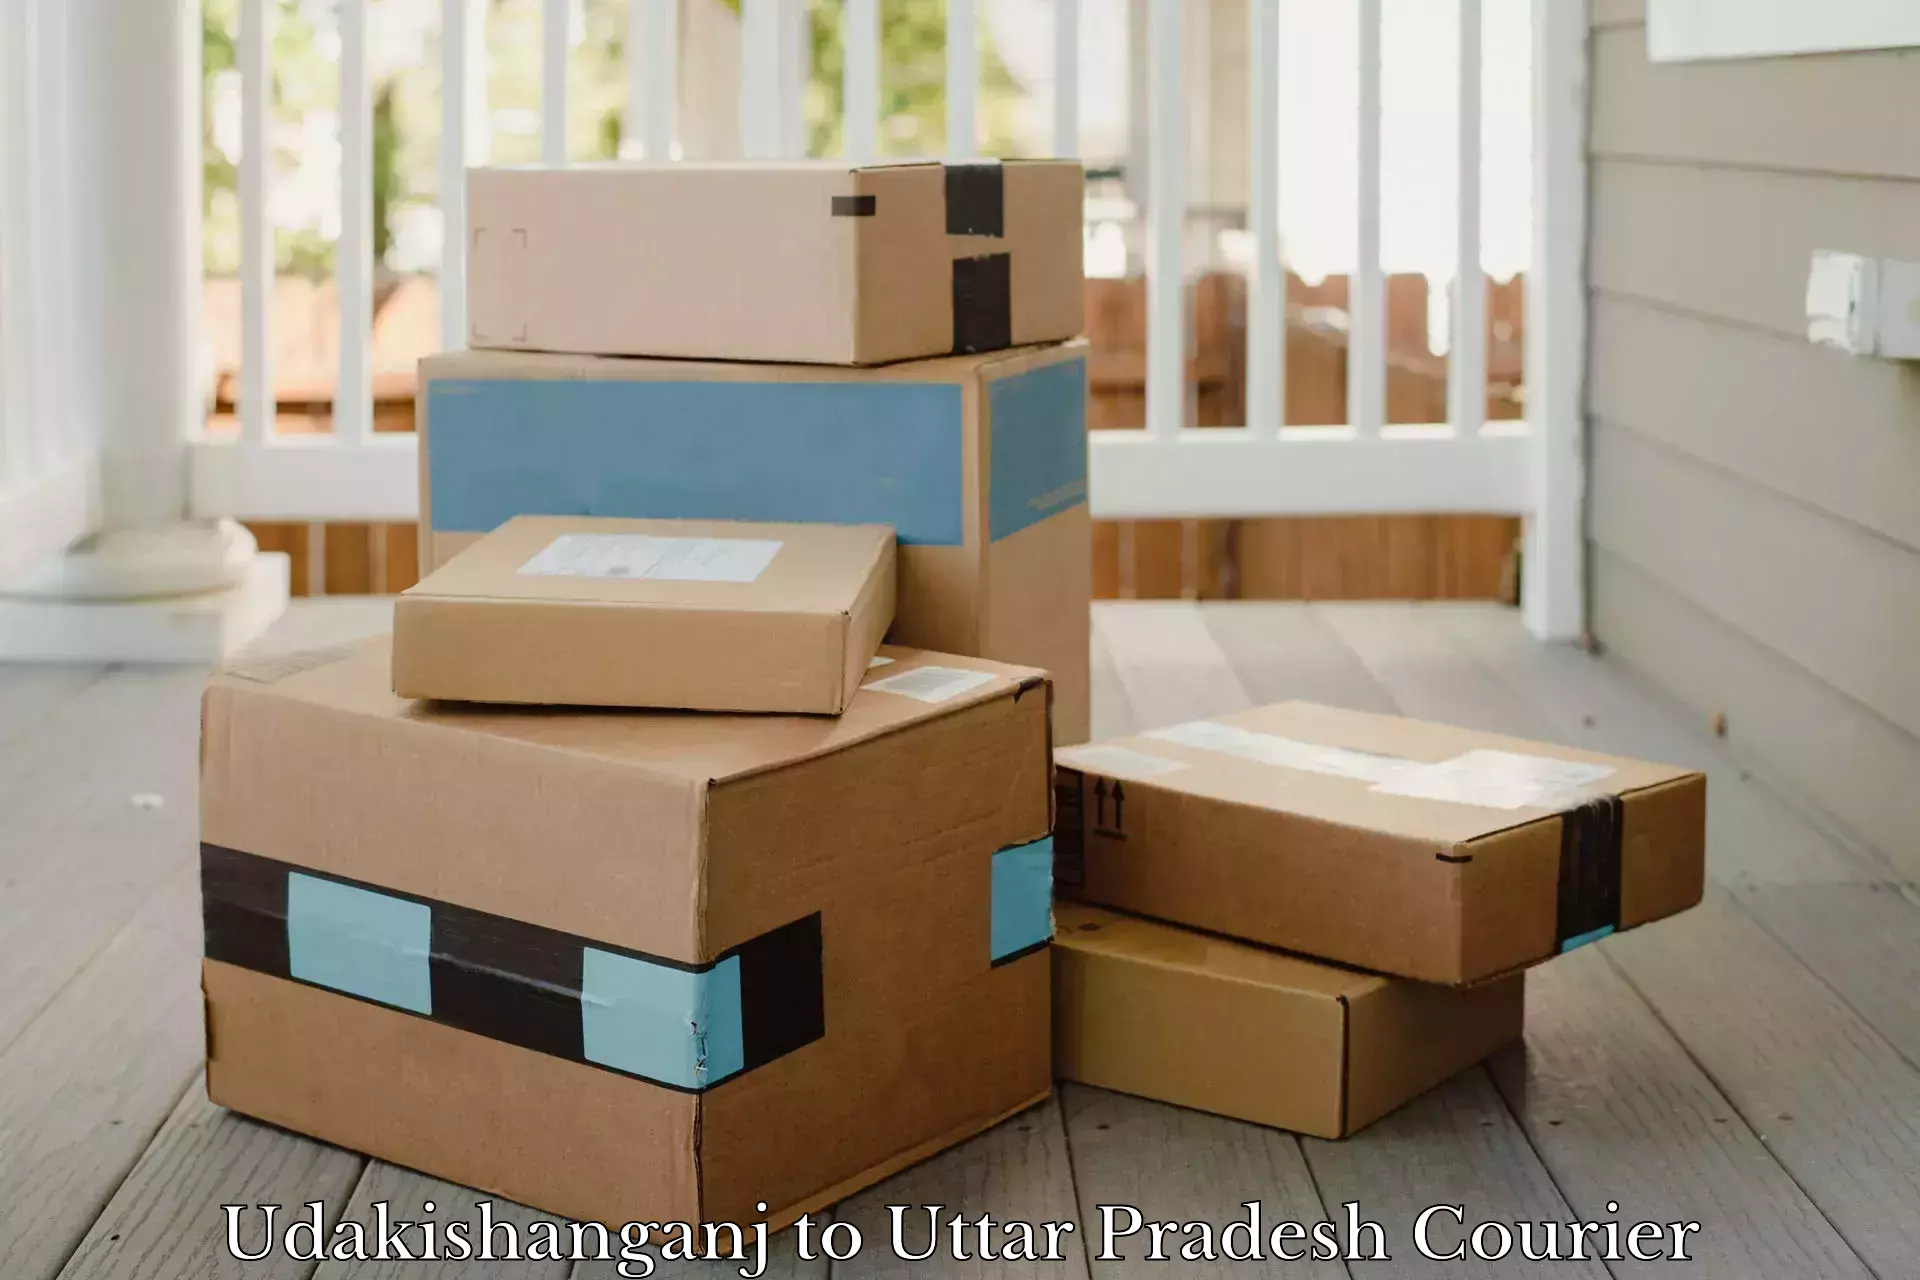 Cargo delivery service Udakishanganj to Madhoganj